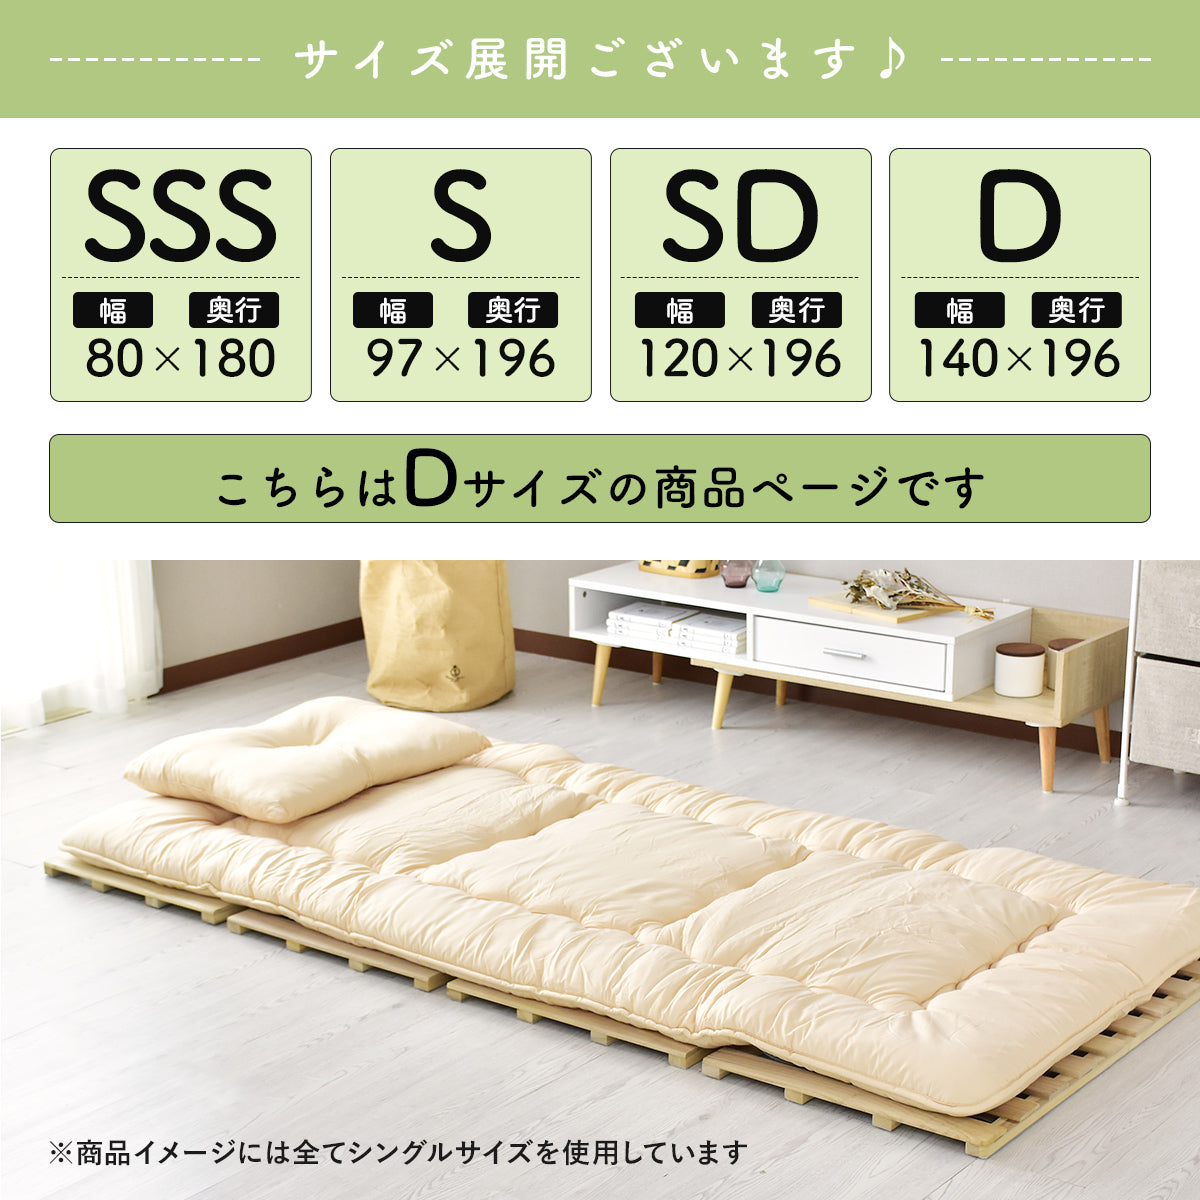 ダブルサイズ すのこ ベッド 天然桐材 湿気対策 折りたたみ式 ビスケ D